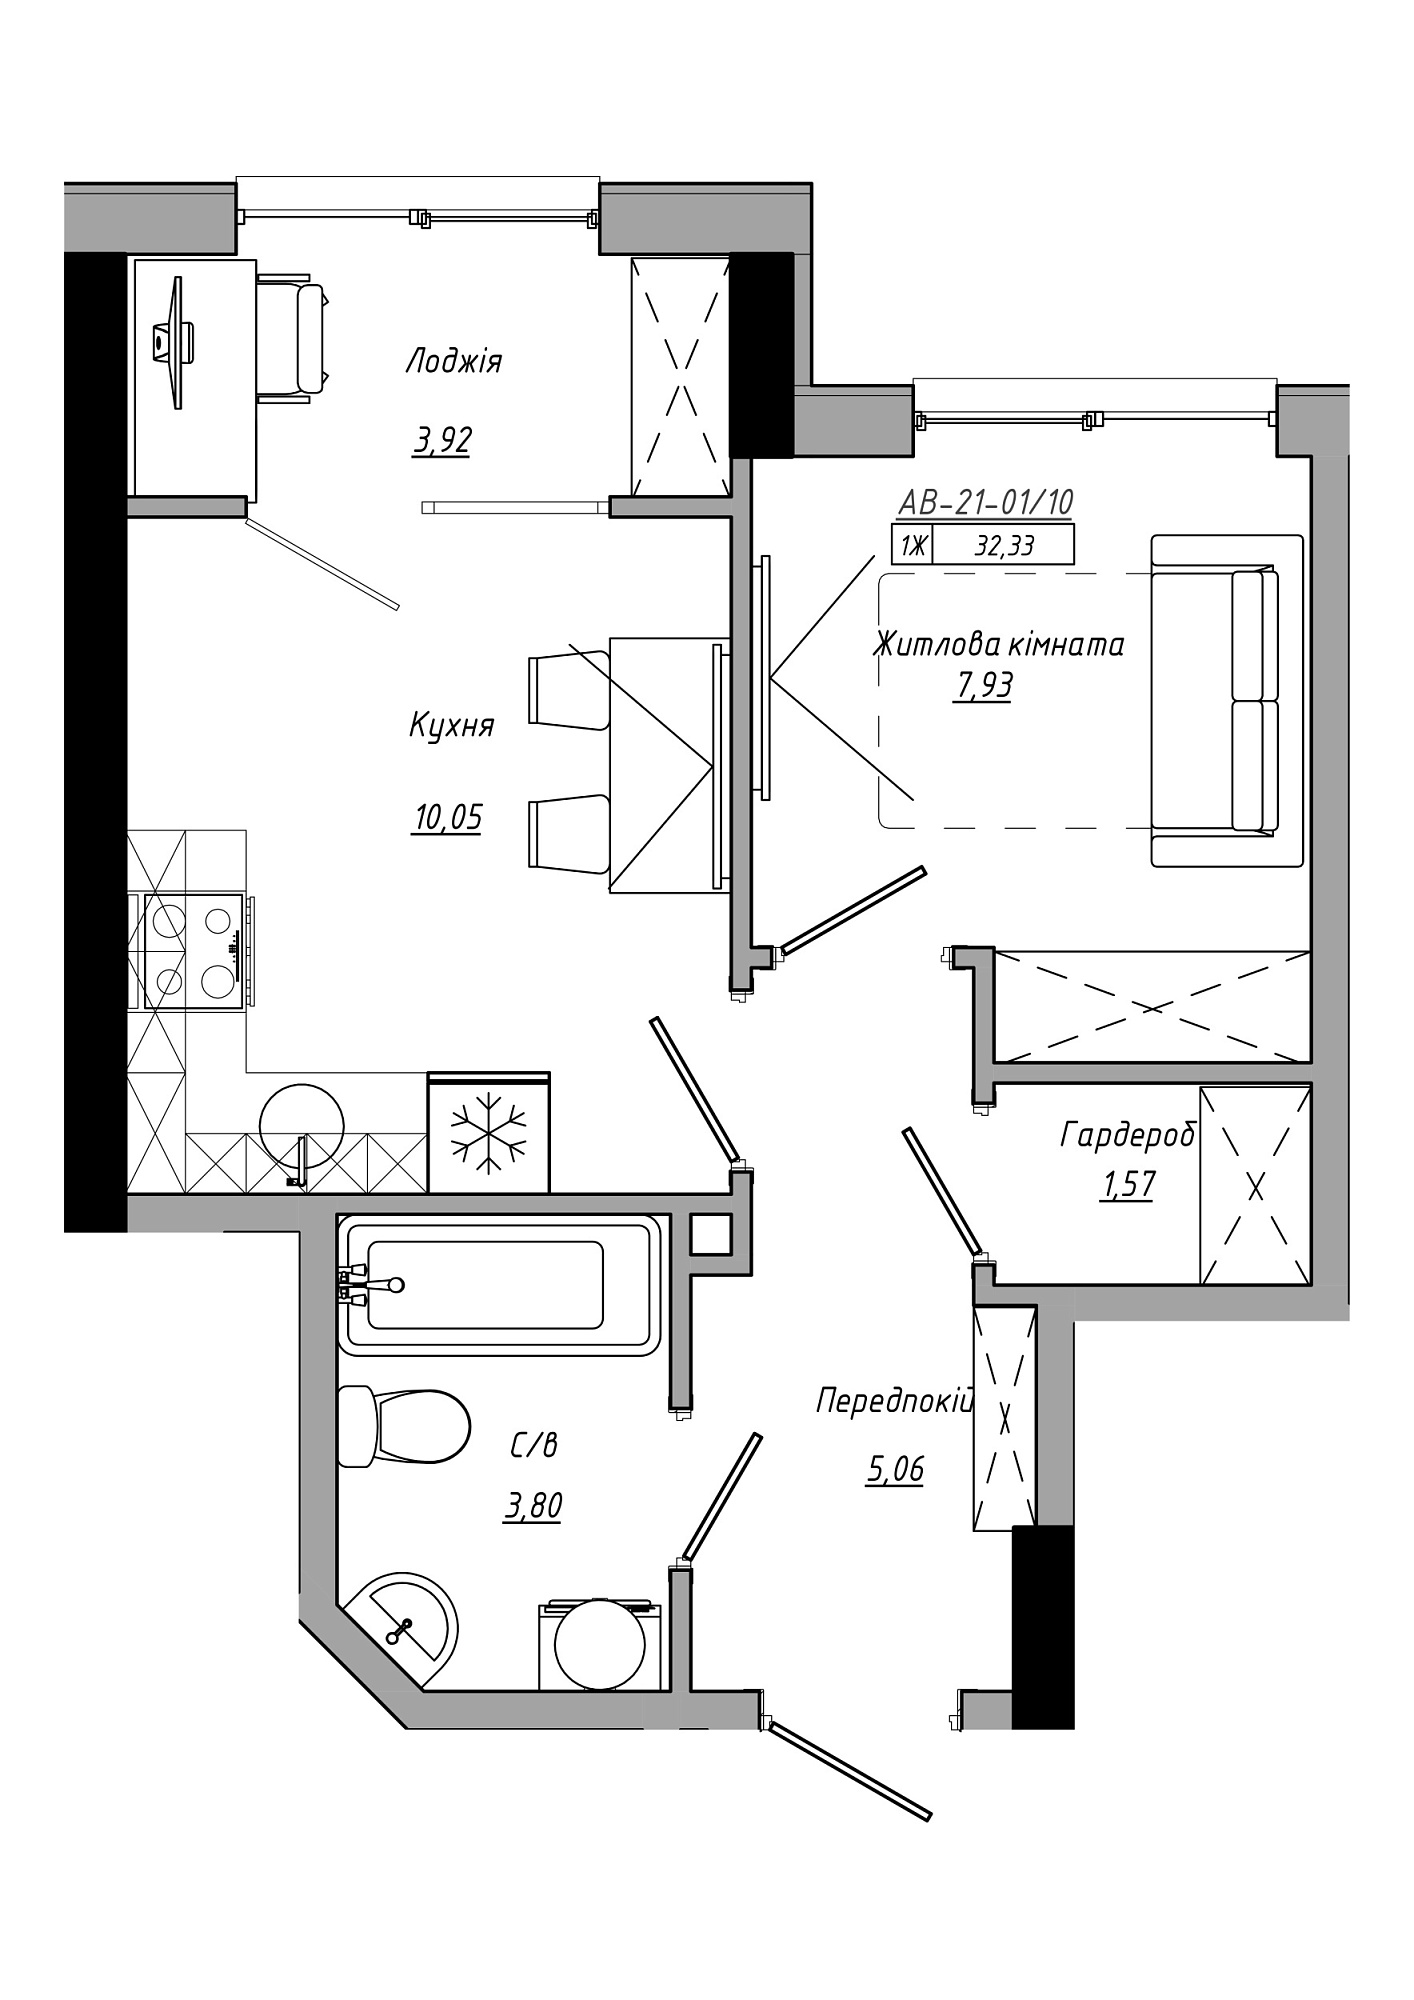 Планування 1-к квартира площею 32.33м2, AB-21-01/00010.